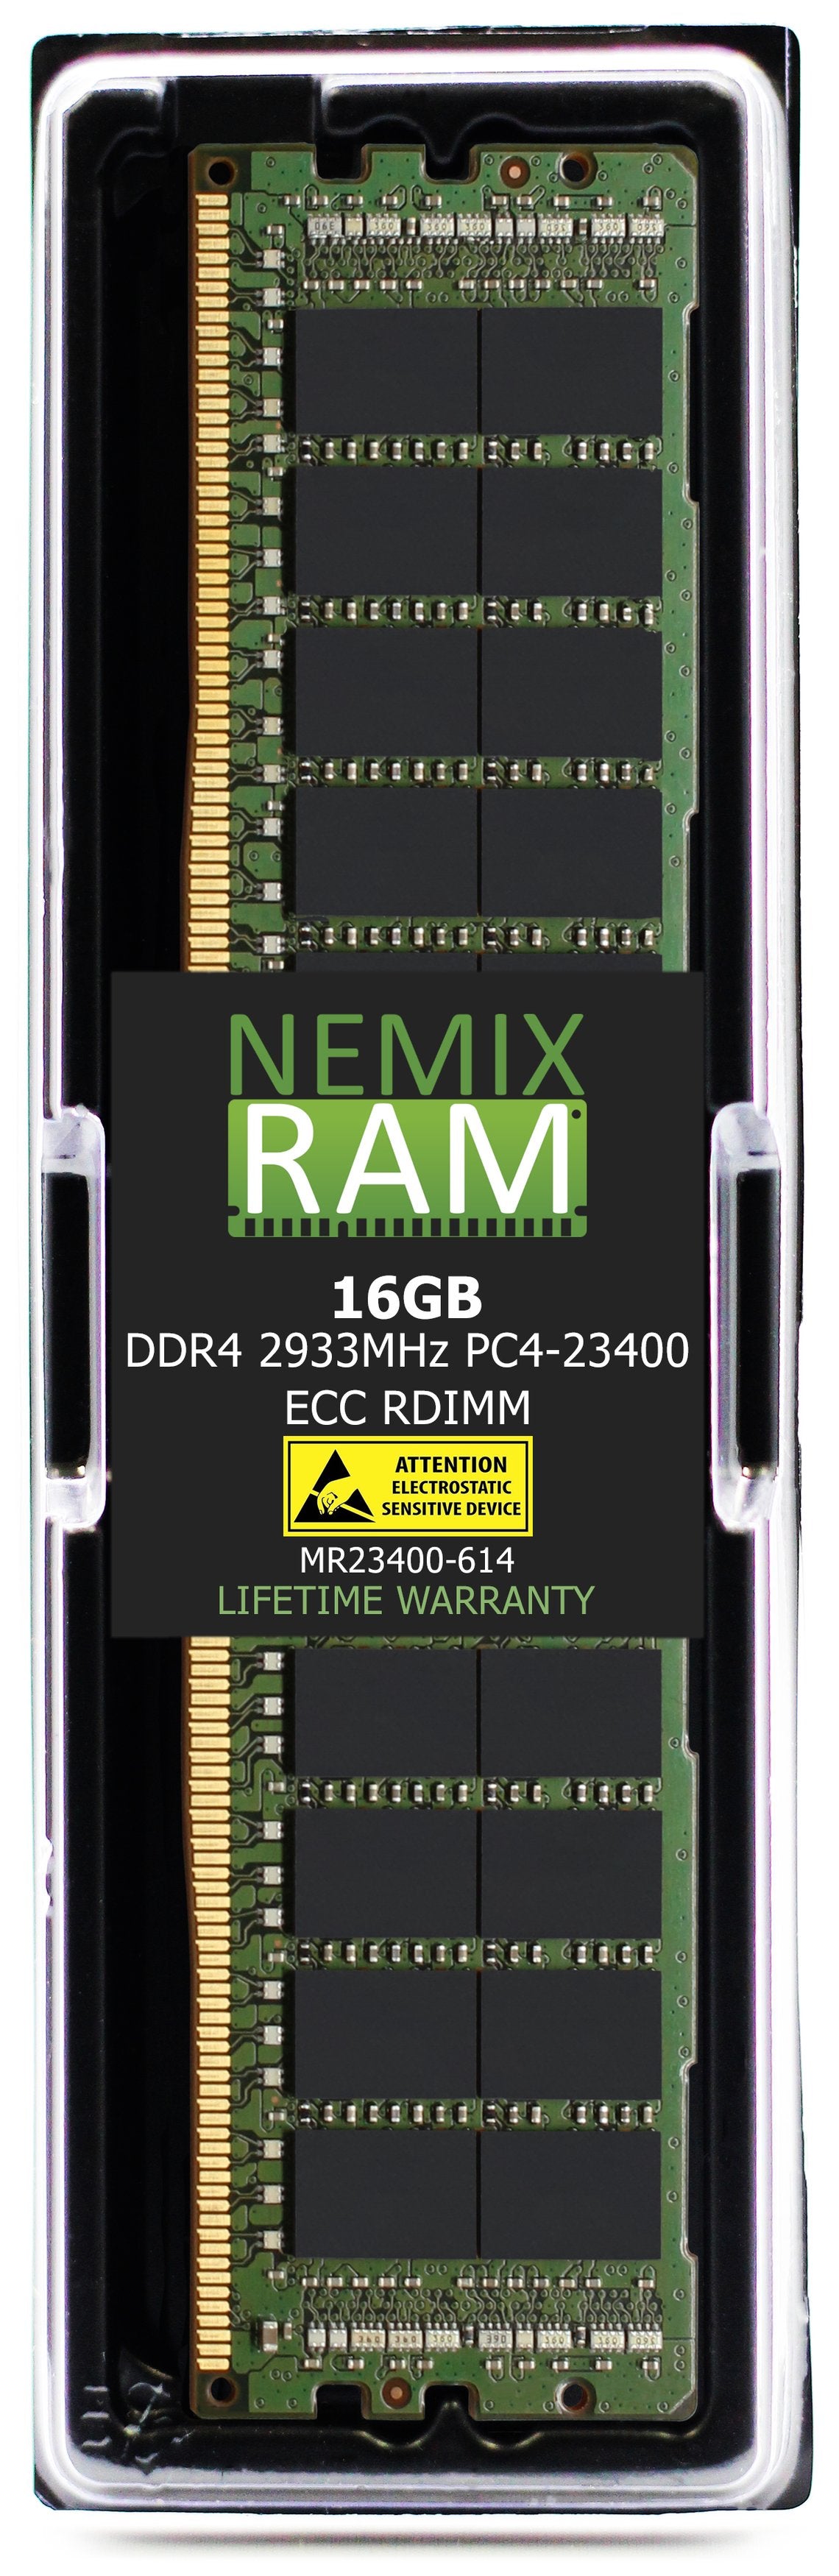 16GB DDR4 2933MHZ PC4-23400 RDIMM Compatible with Supermicro MEM-DR416LA-ER29